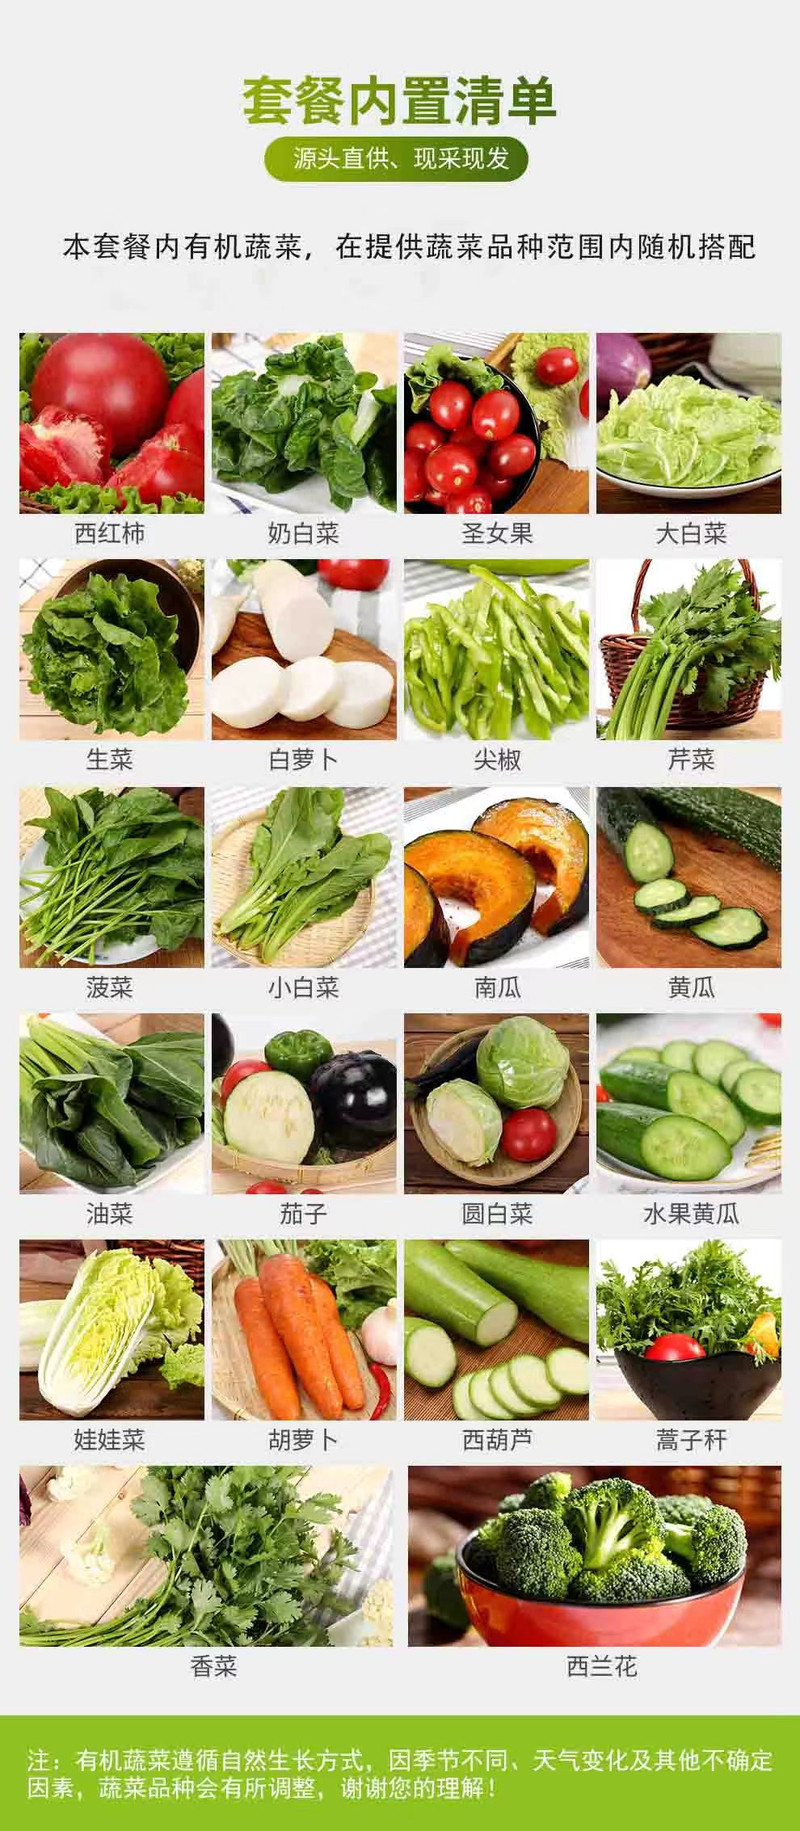 邮政农品 【北京优农】延庆北菜园有机蔬菜礼盒约4kg